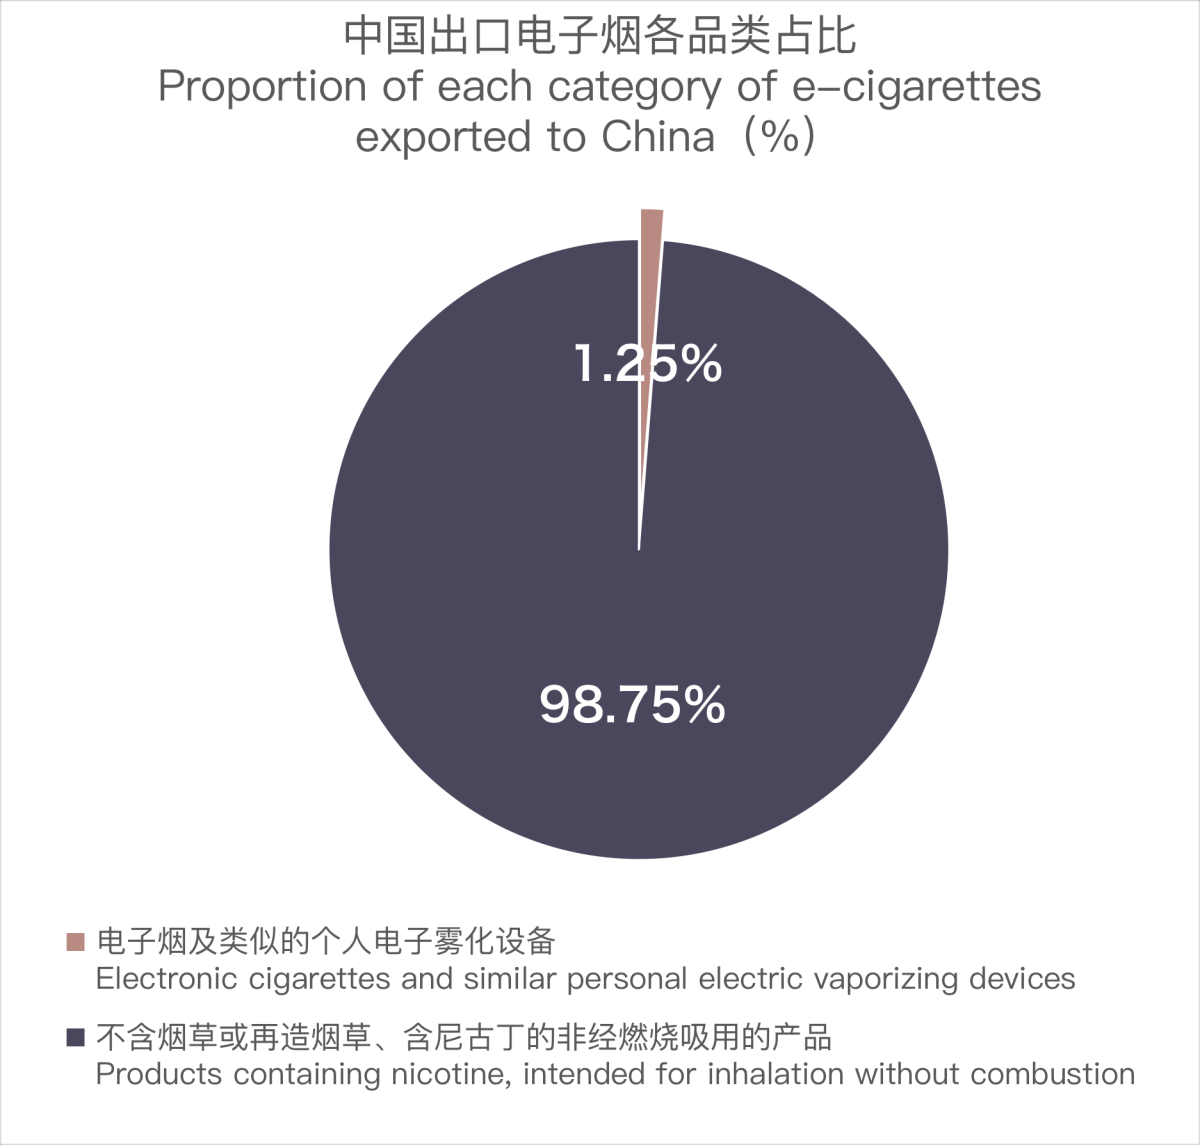 12月中国出口澳大利亚电子烟约5223万美元 环比上涨87.67%